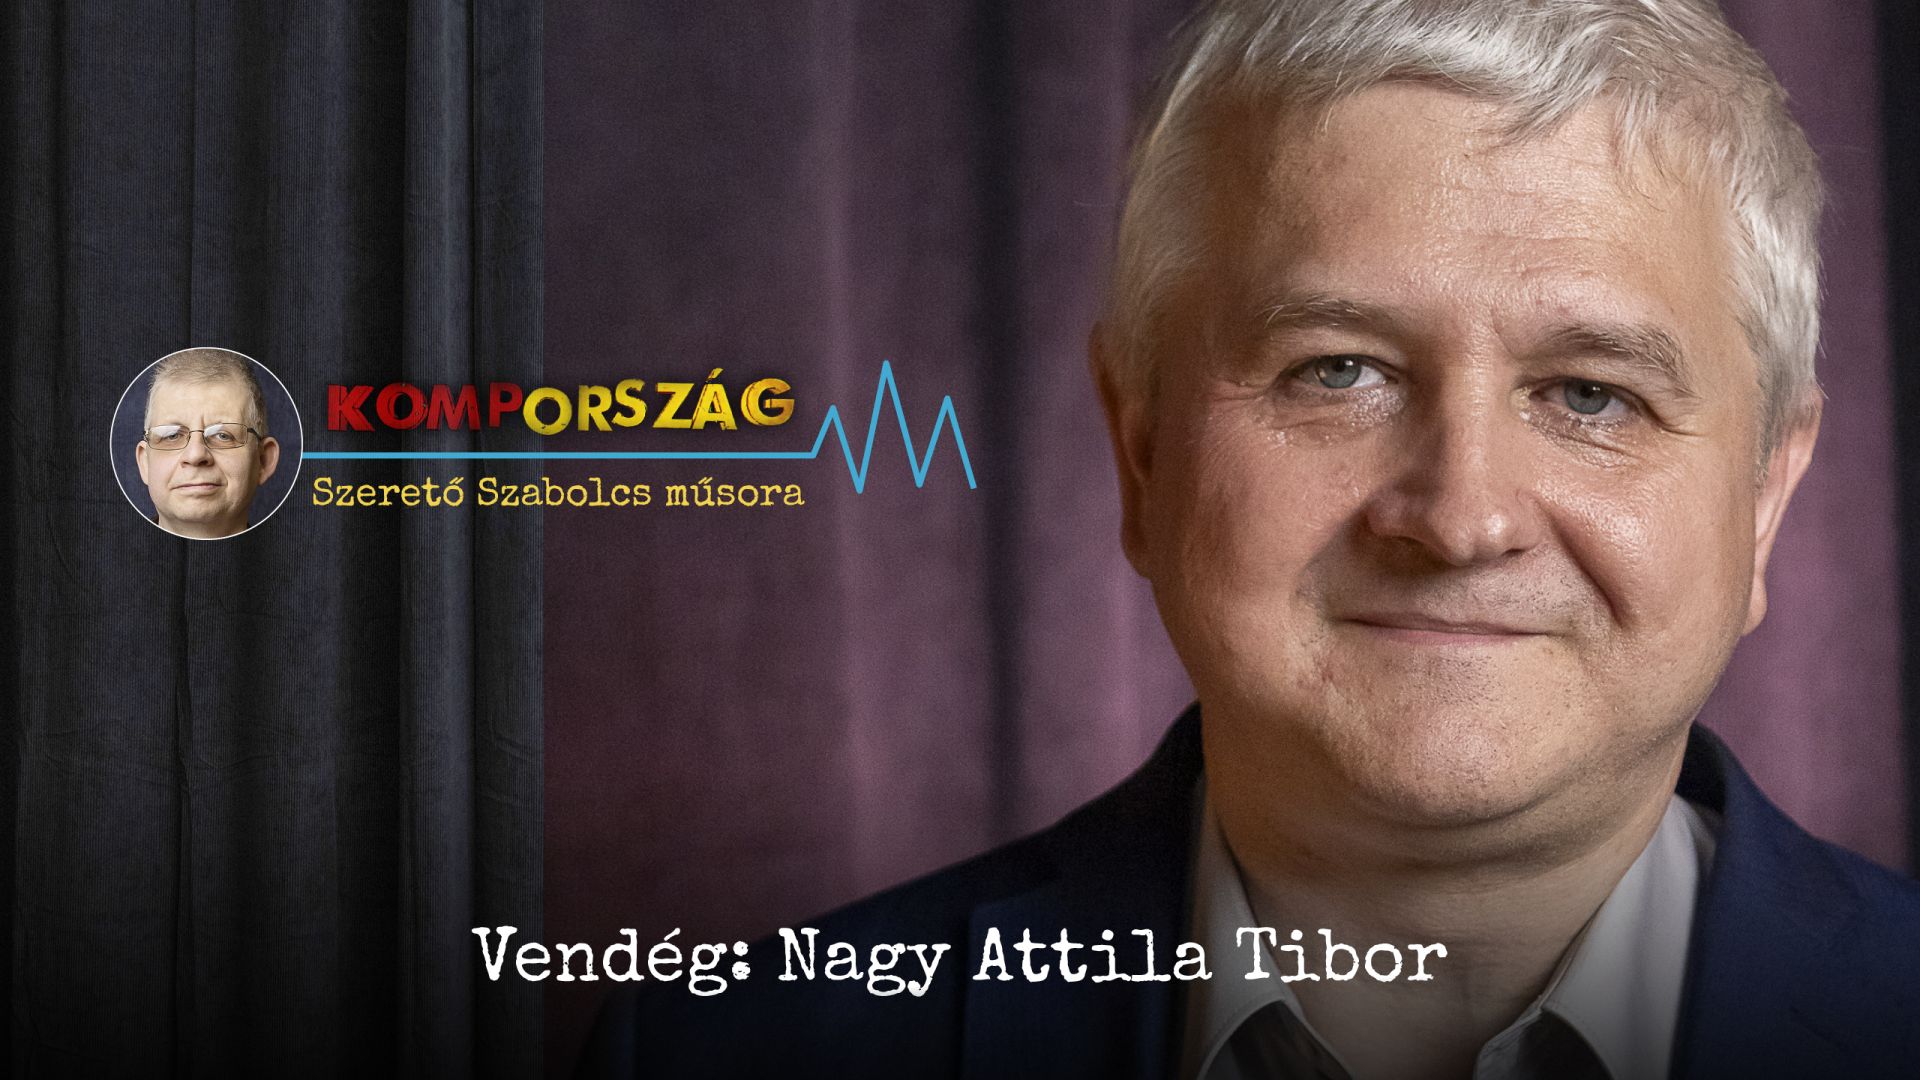 Vasárnap megszülethet Orbán Viktor új, igazi kihívója – Nagy Attila Tibor a Kompországban